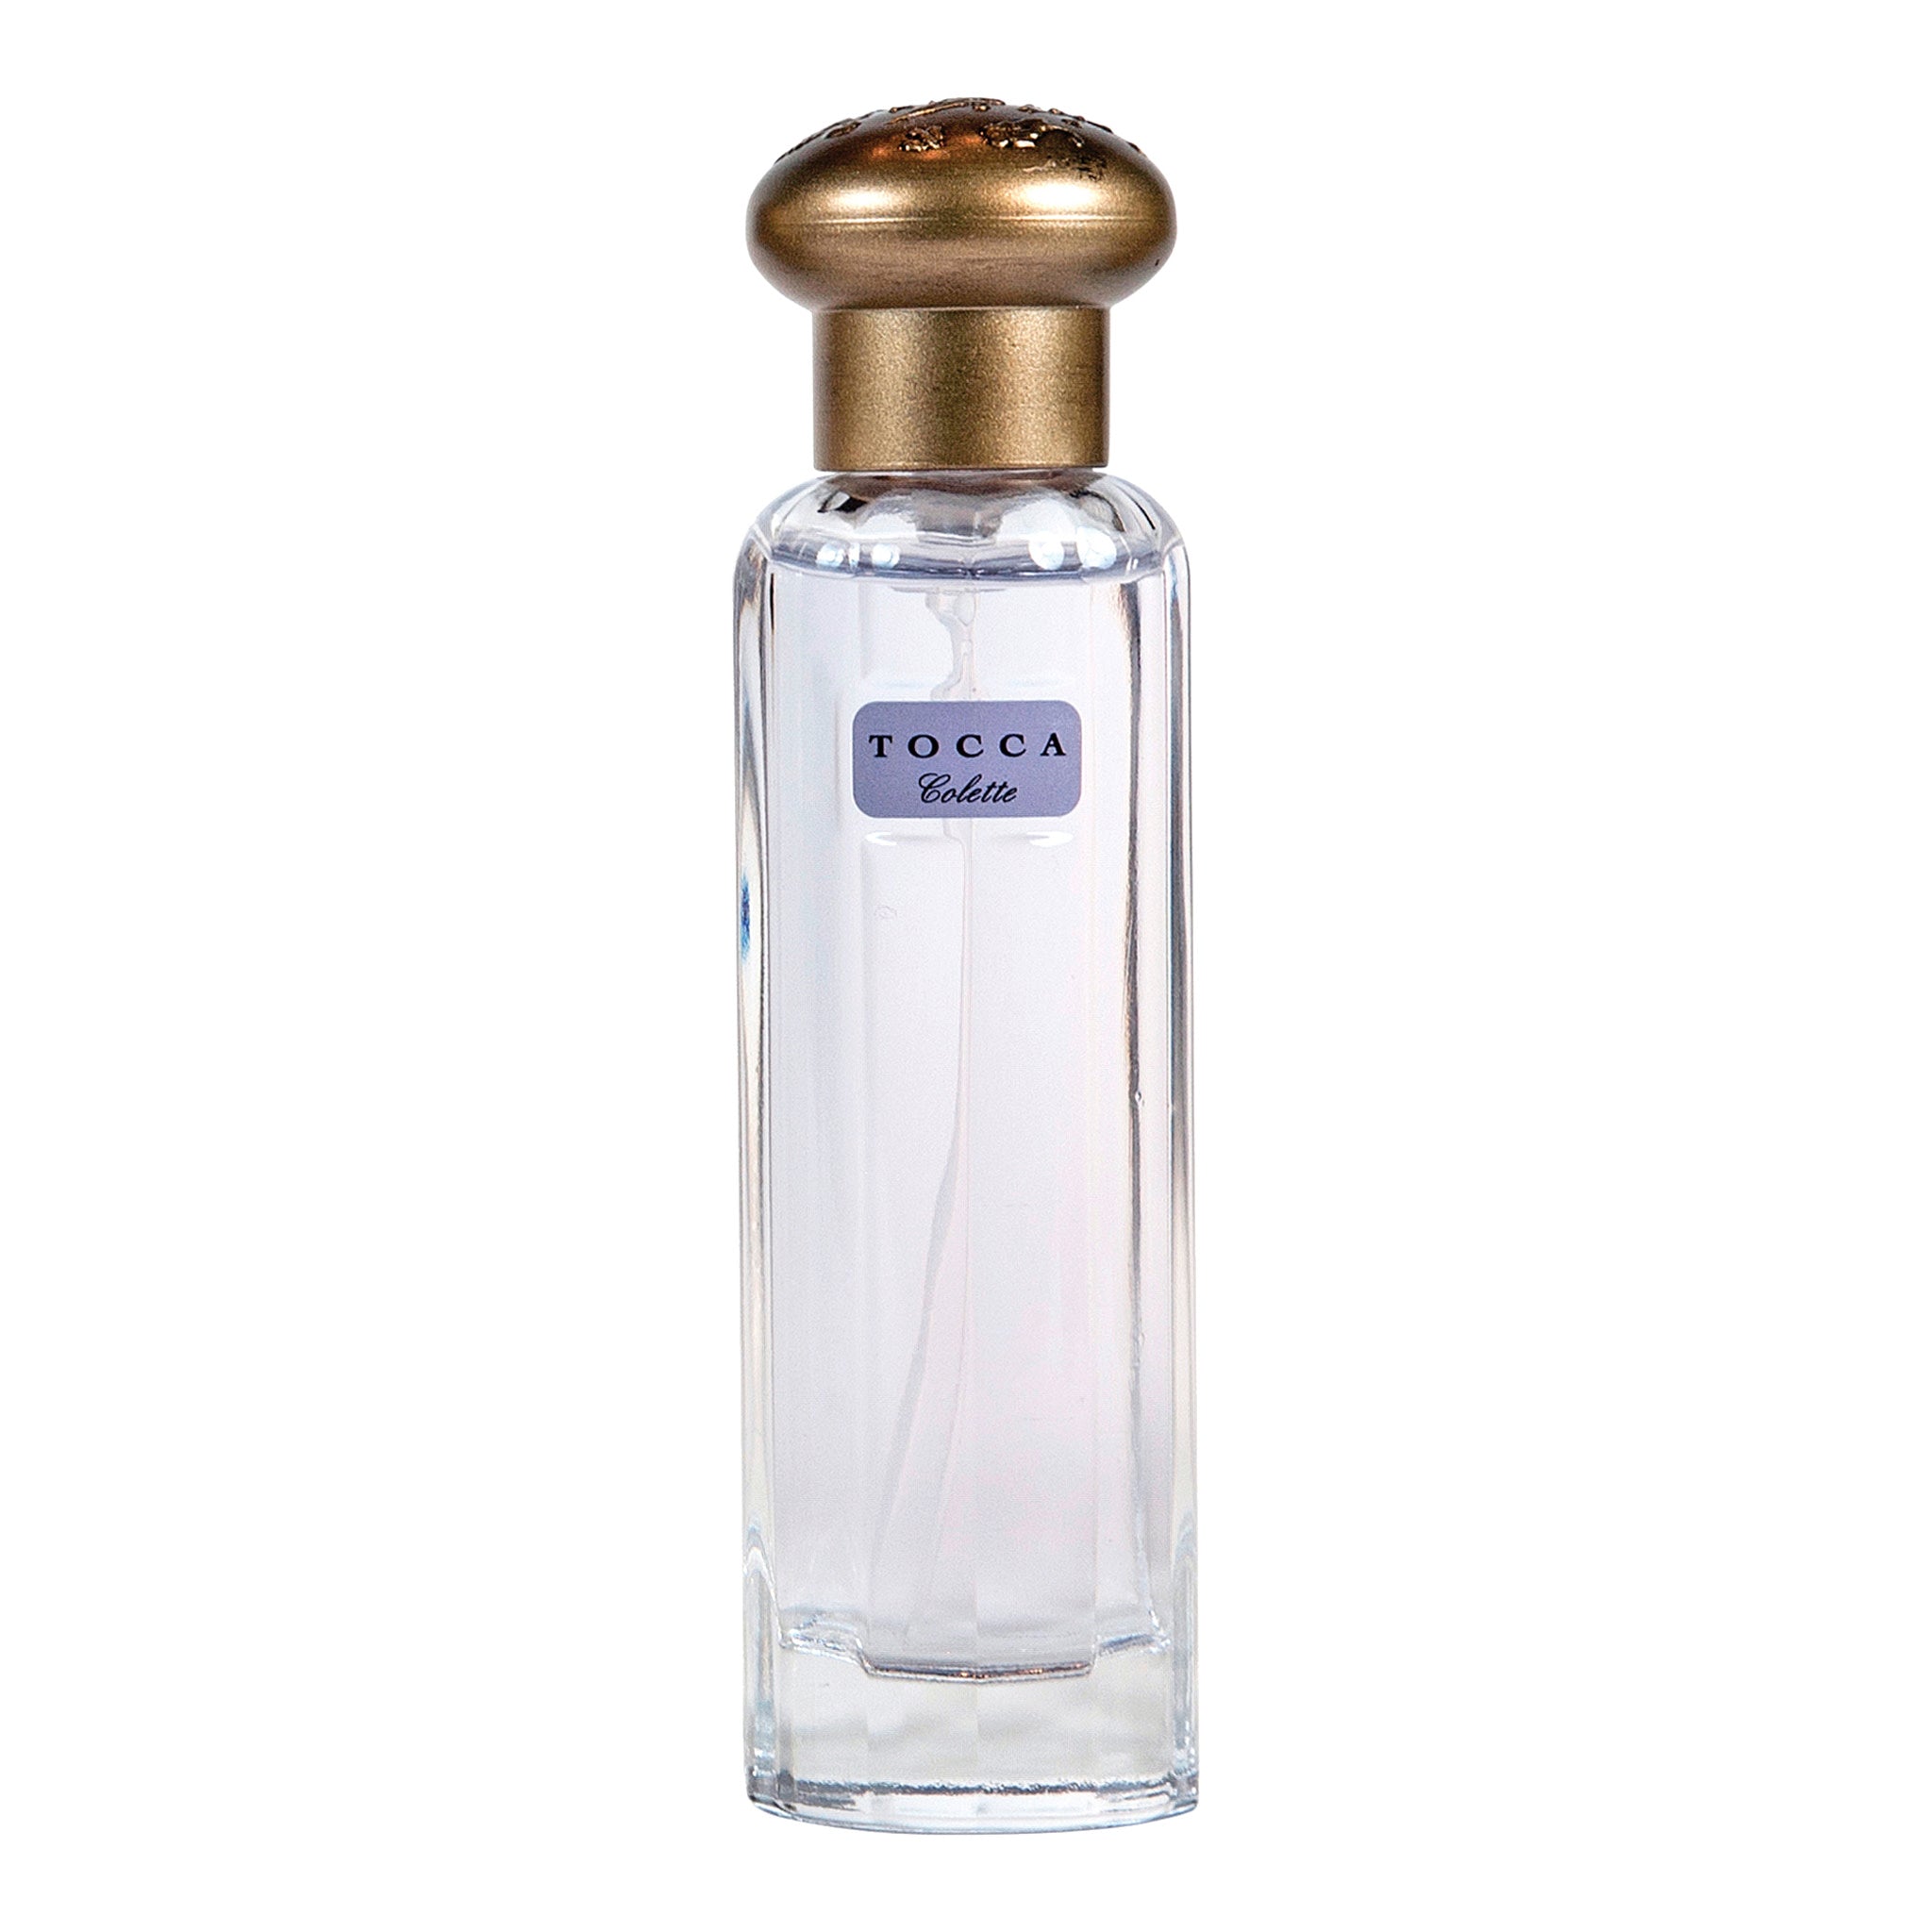 Tocca Colette Eau de Parfum Travel Fragrance Spray main image.